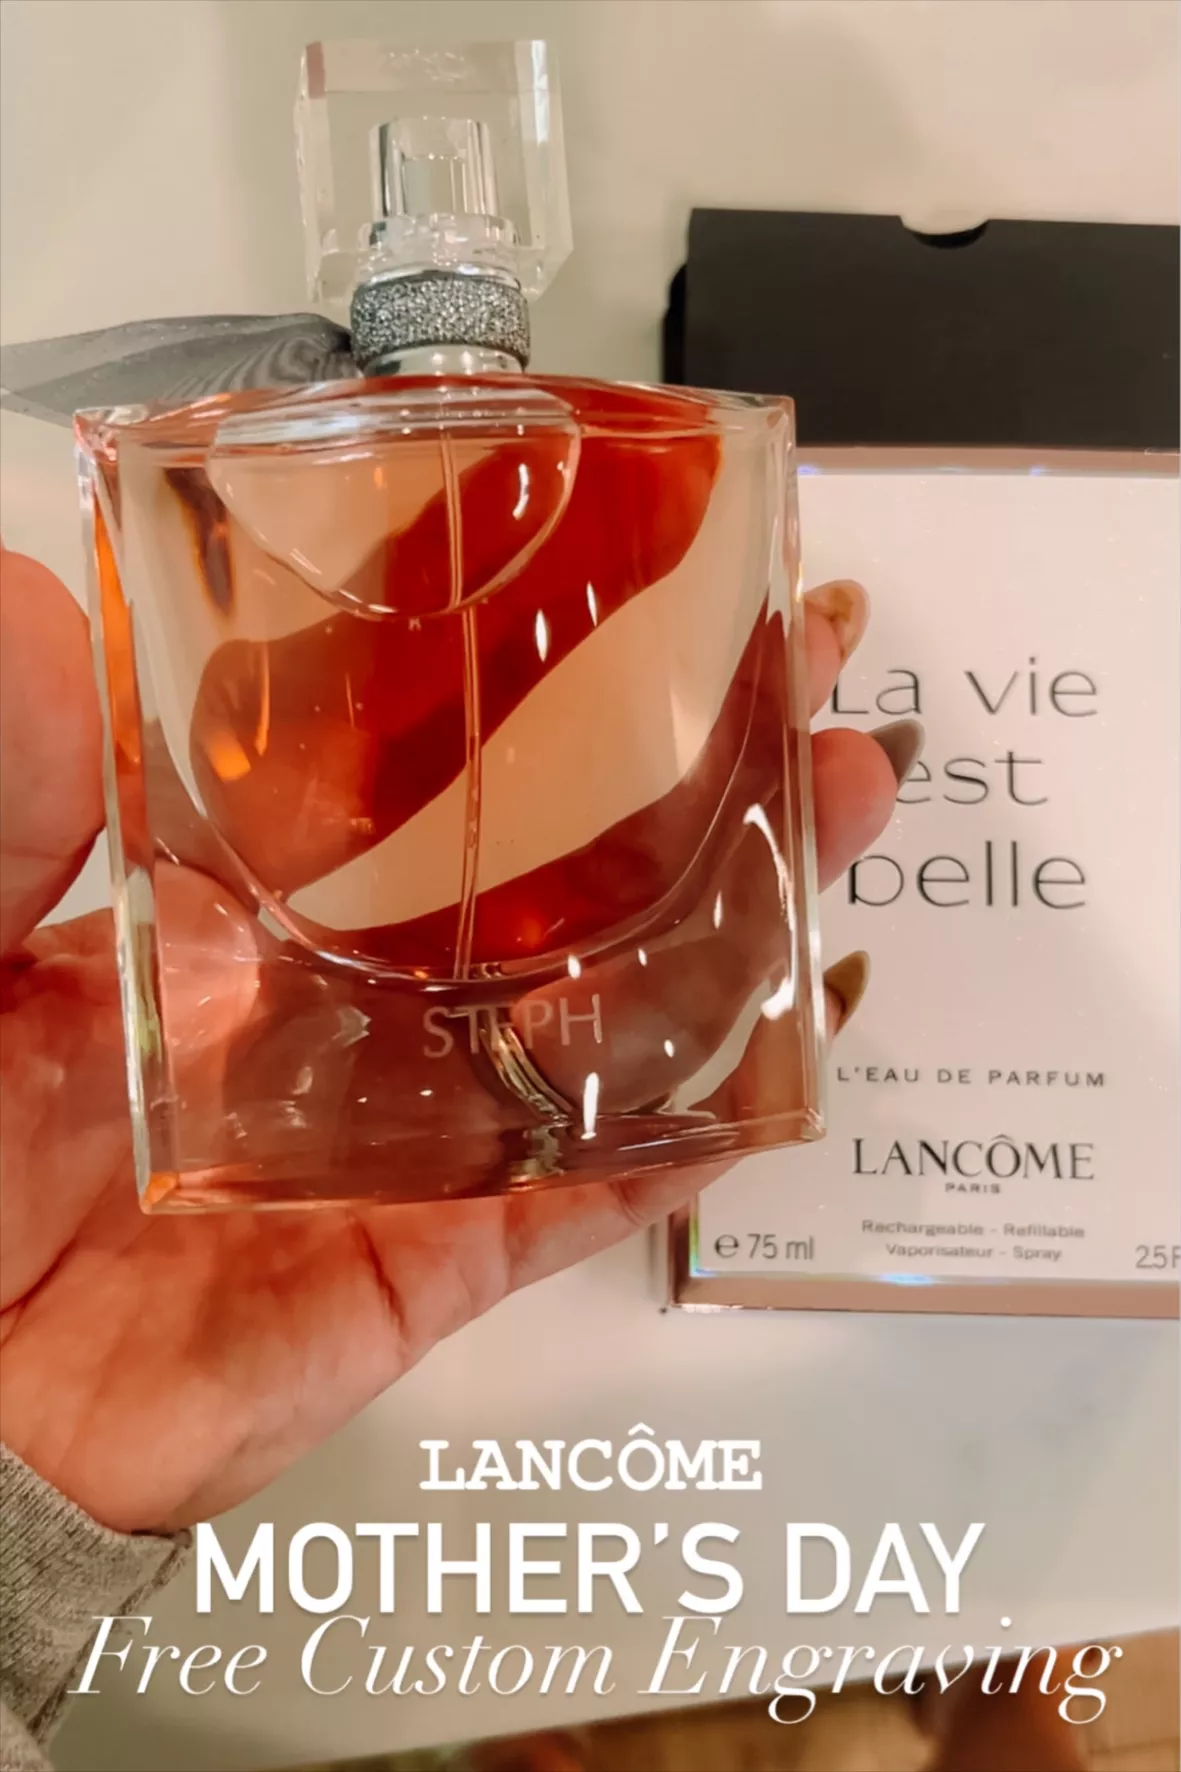 CHANCE EAU TENDRE Eau de Parfum Set curated on LTK